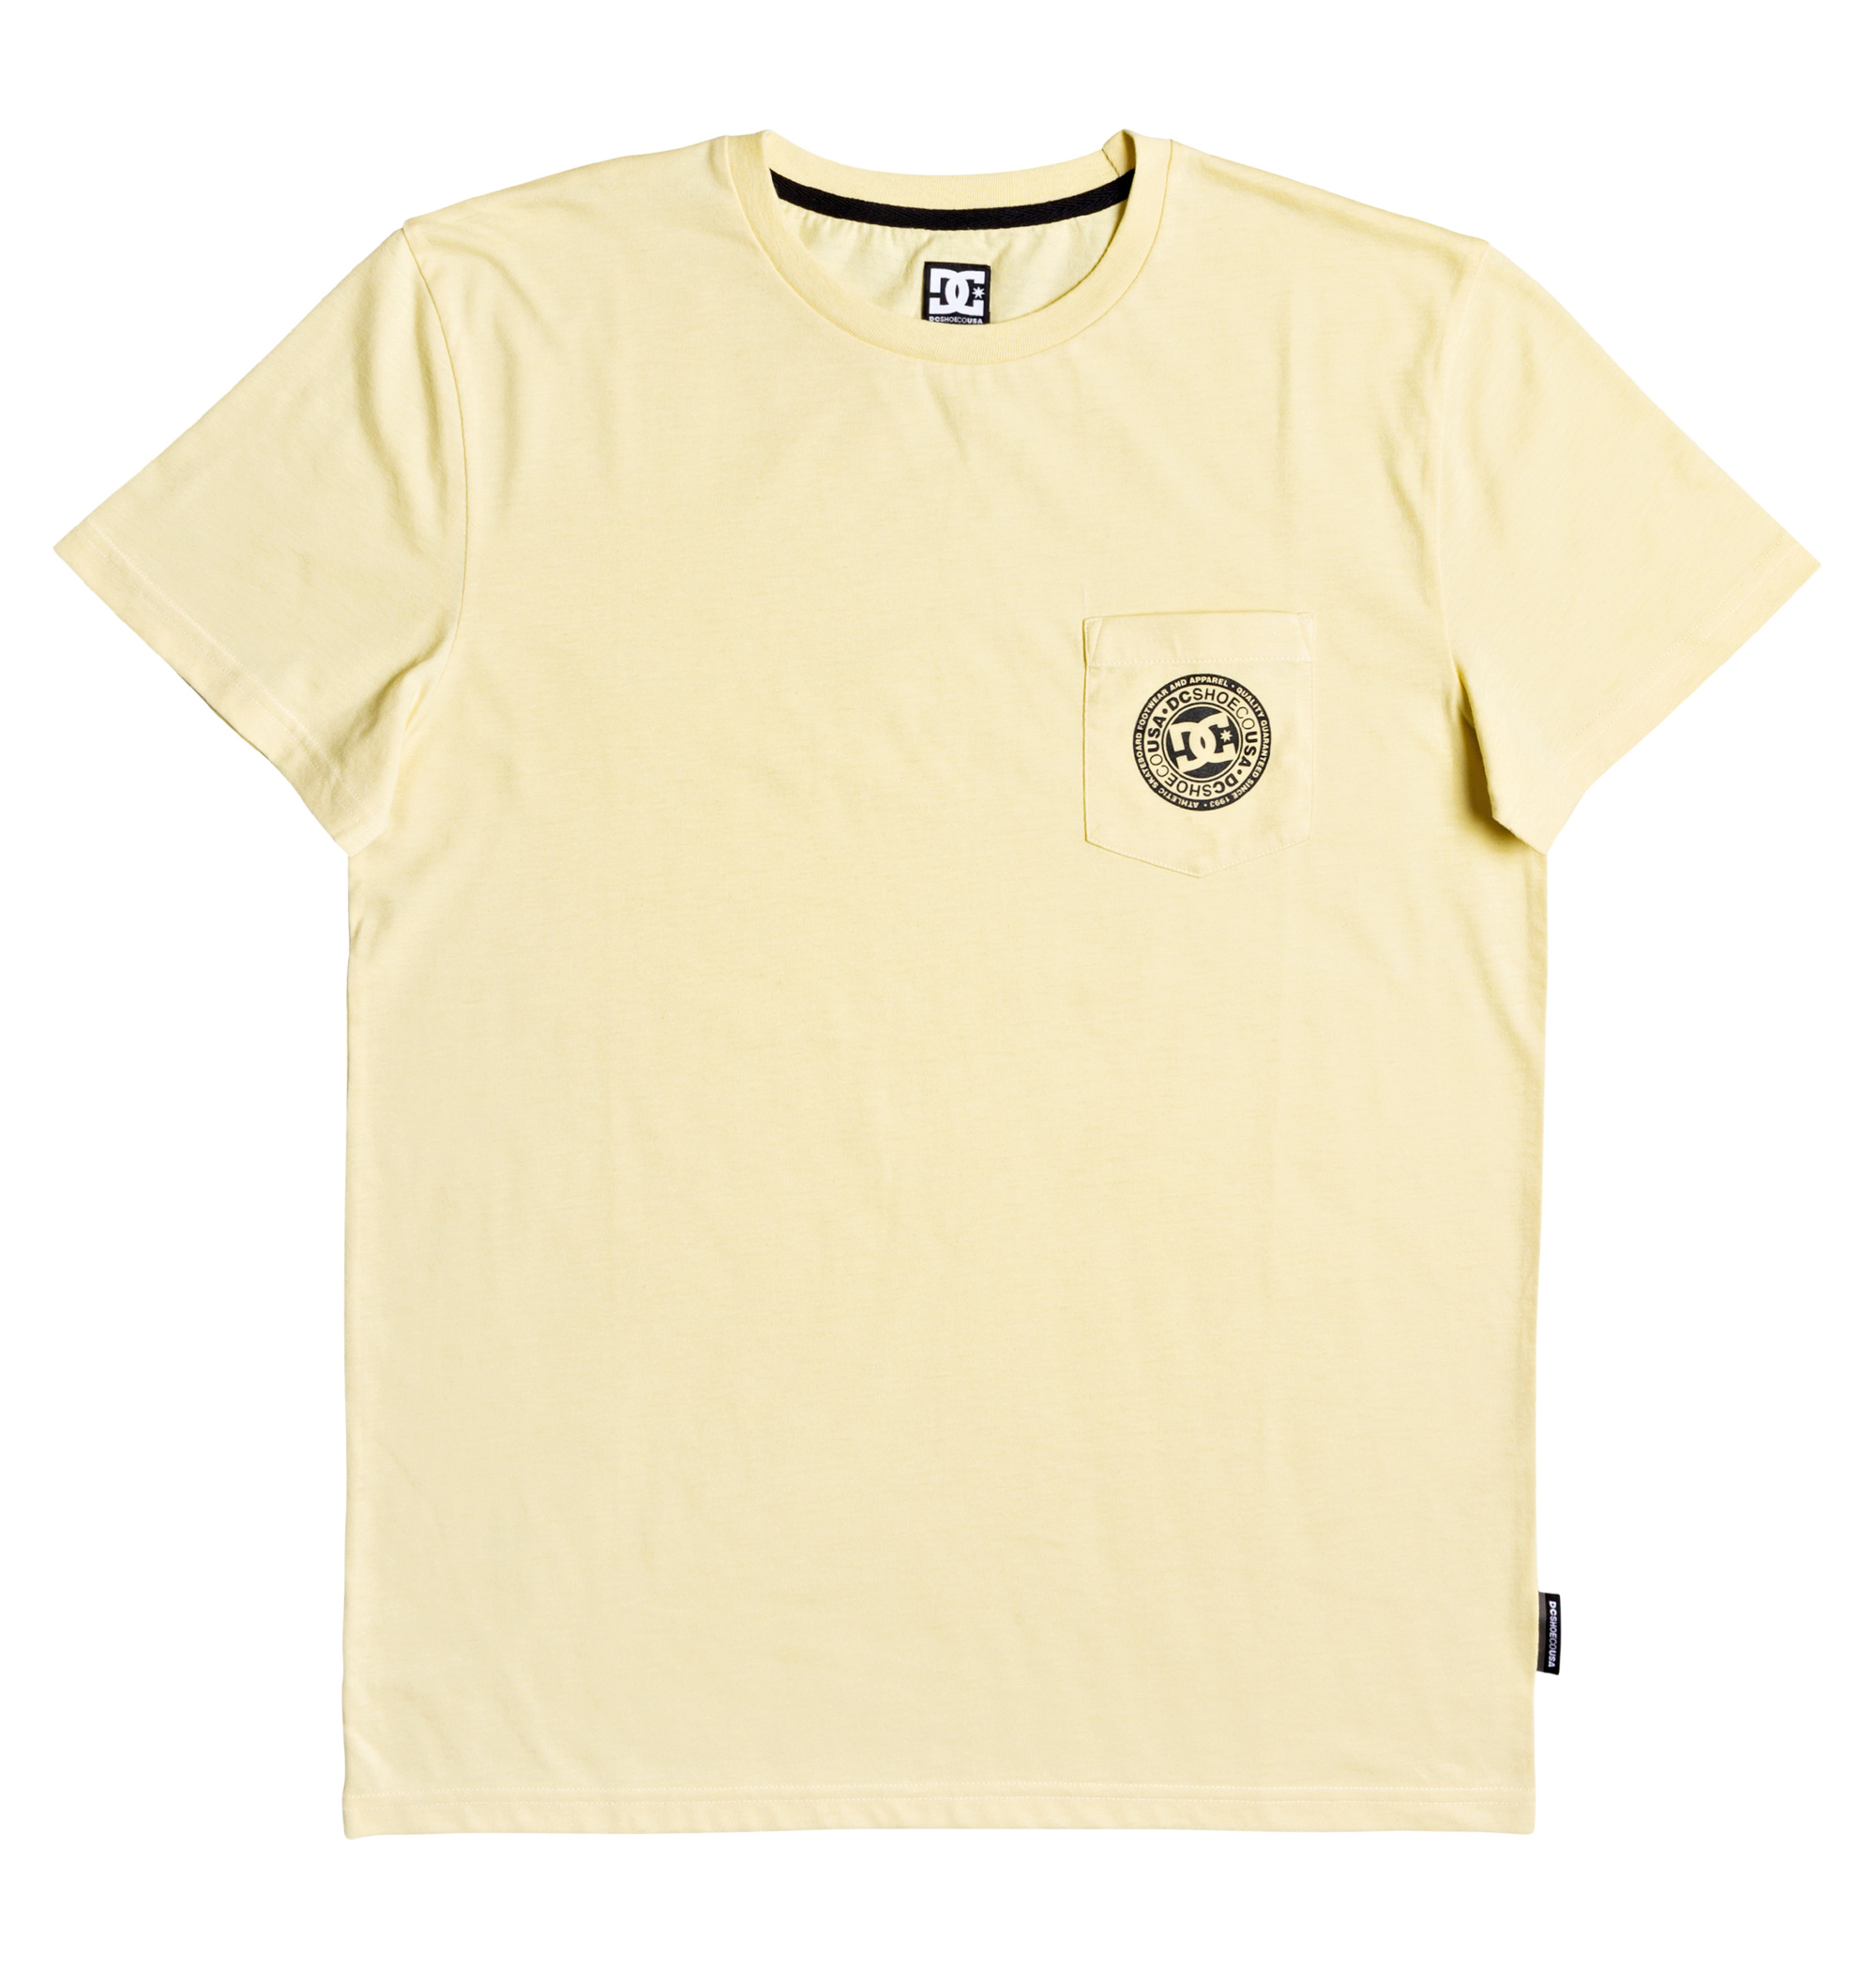 30%OFF！ BASIC POCKET TEE 4 メイントップスからインナーまで幅広く活躍するミニマルなデザインの半袖Tシャツ